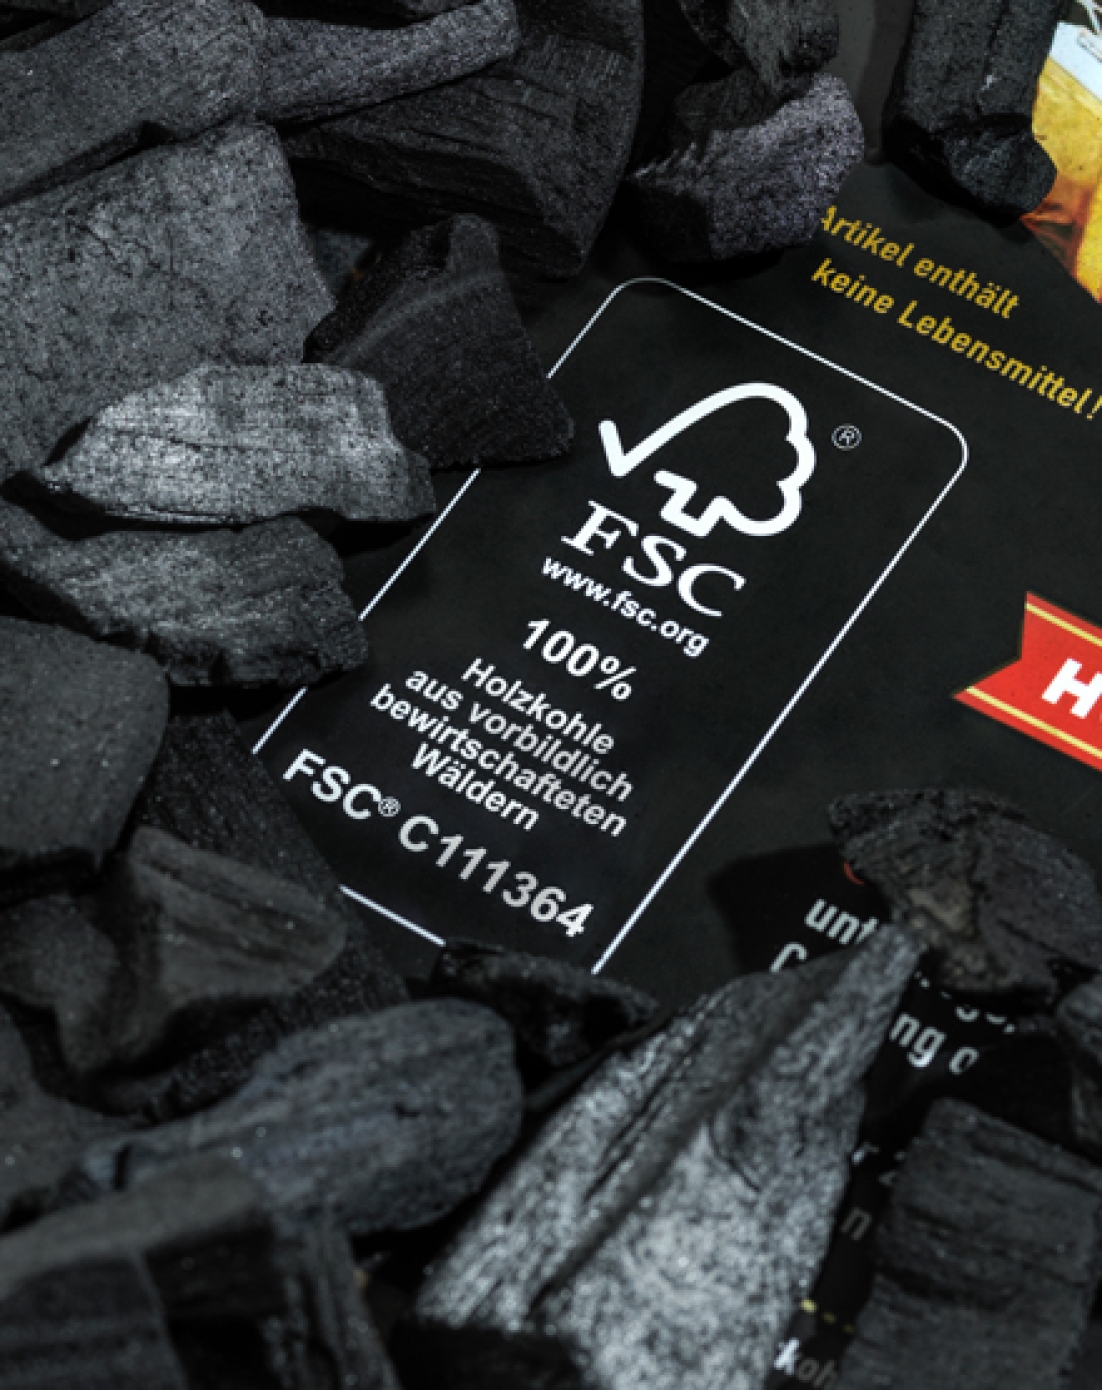 FSC certified charcoal